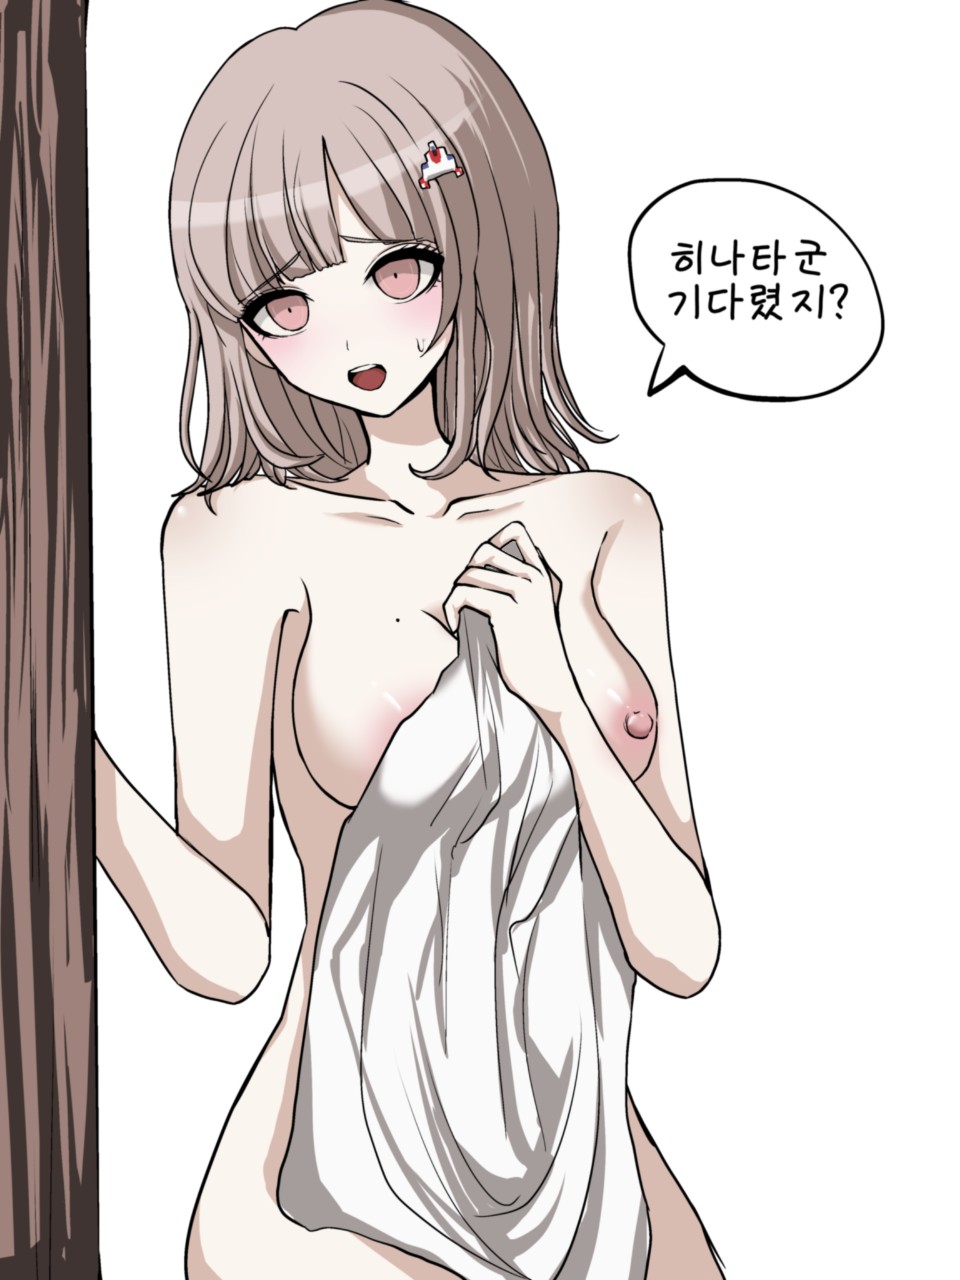 Chiaki nude